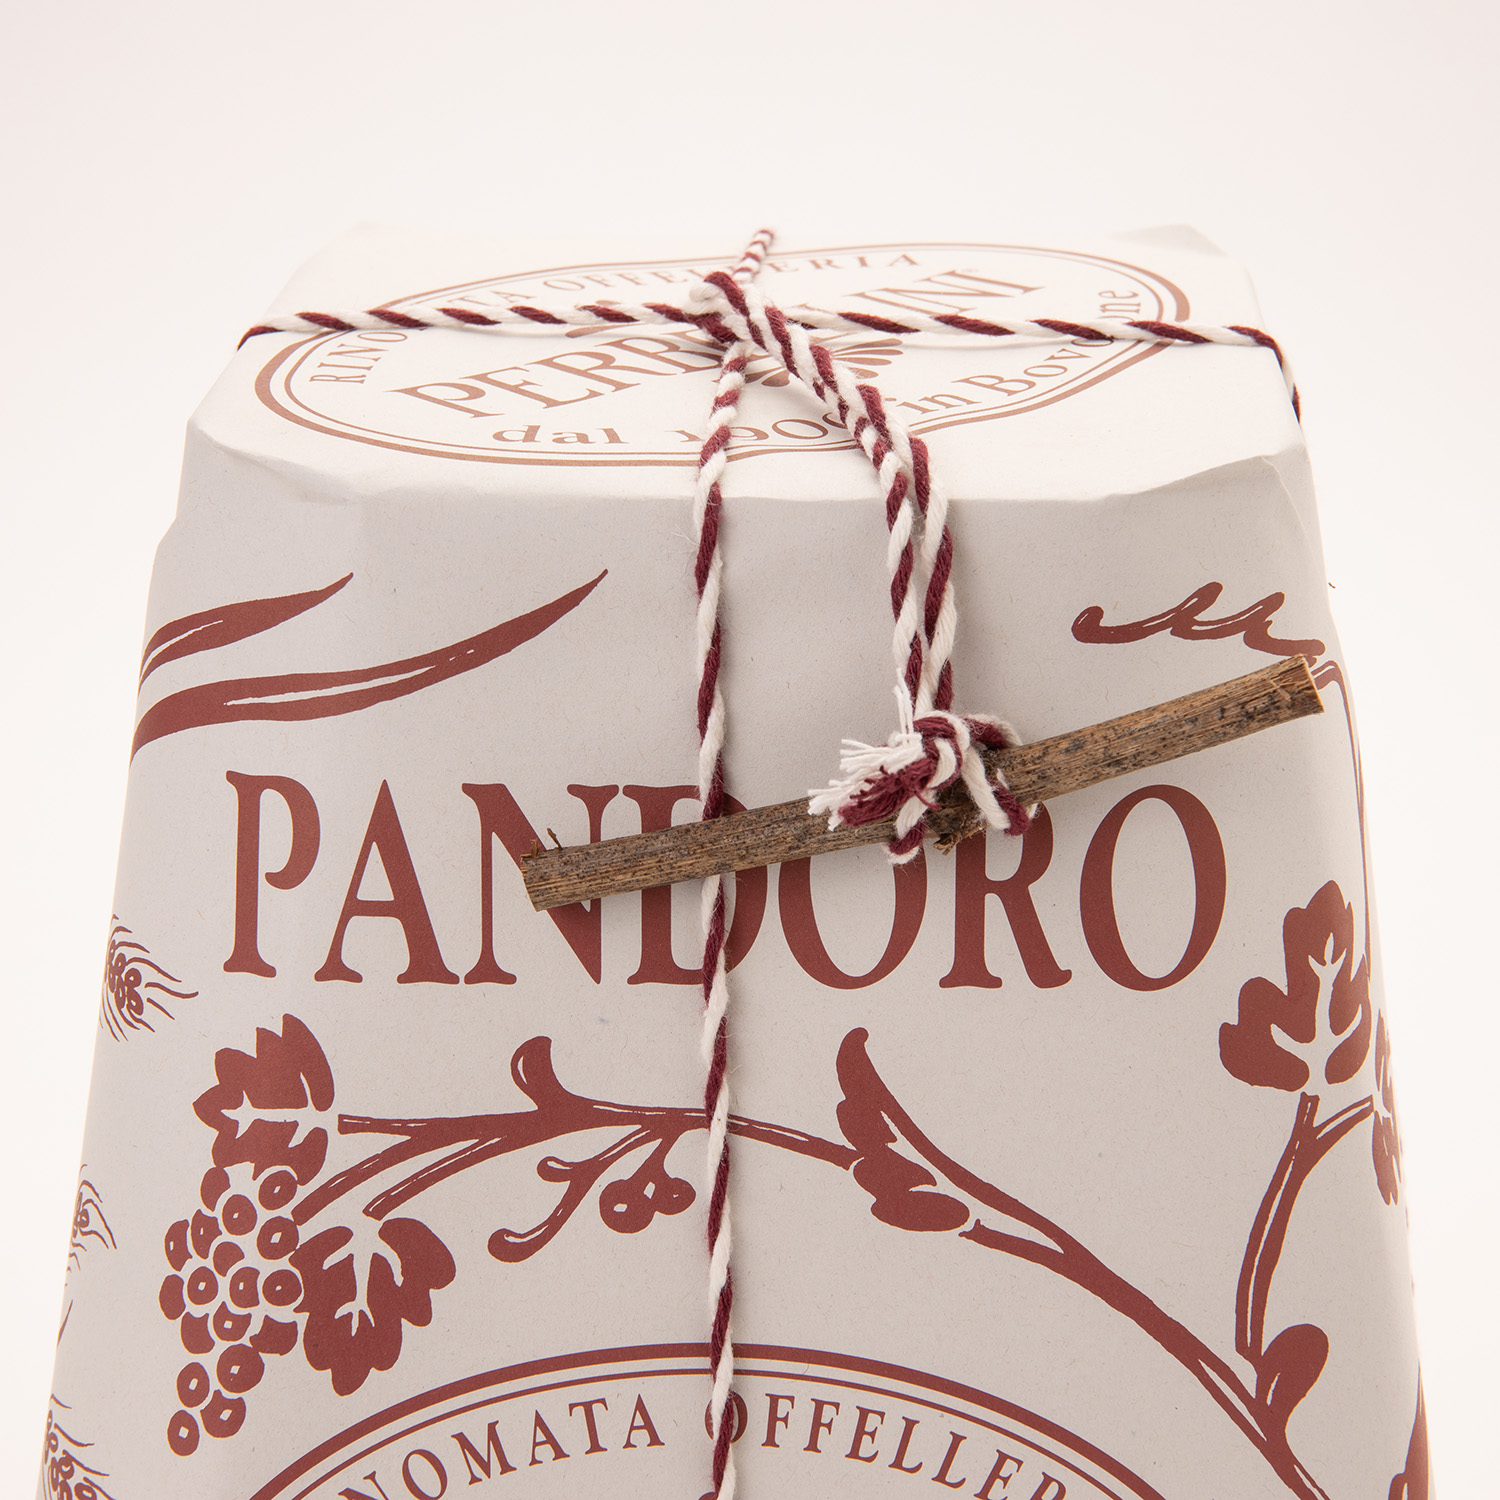 Pandoro In Pasticceria Perbellini, TasteAtlas